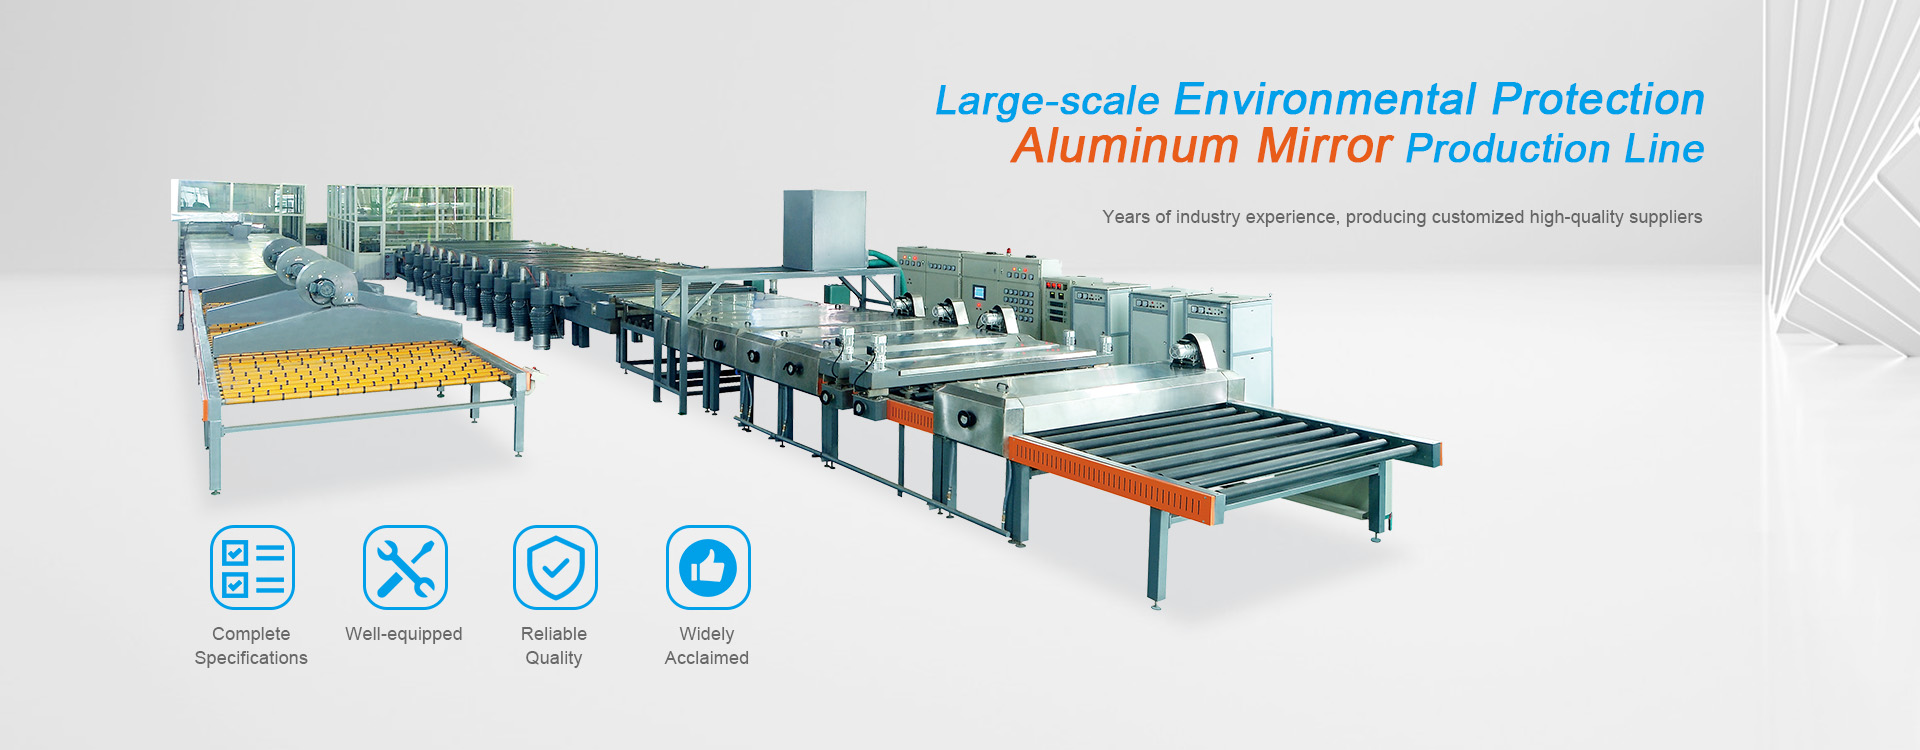 Producent aluminiowych lustrzanych maszyn do powlekania próżniowego